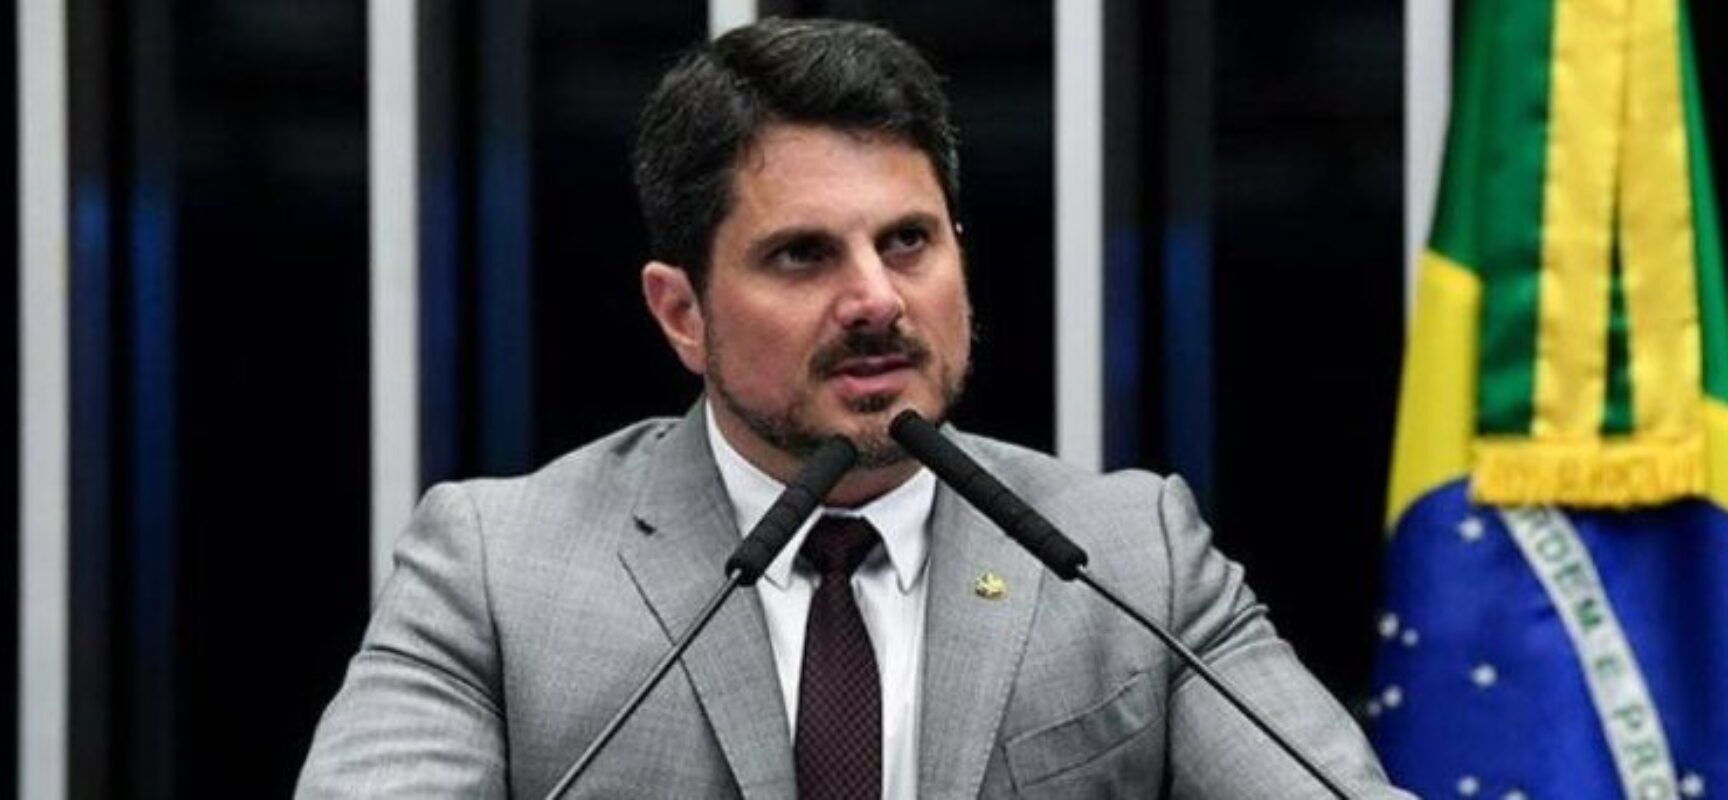 Relatório da PF revela diálogos no celular de Marcos do Val sobre suposto plano golpista